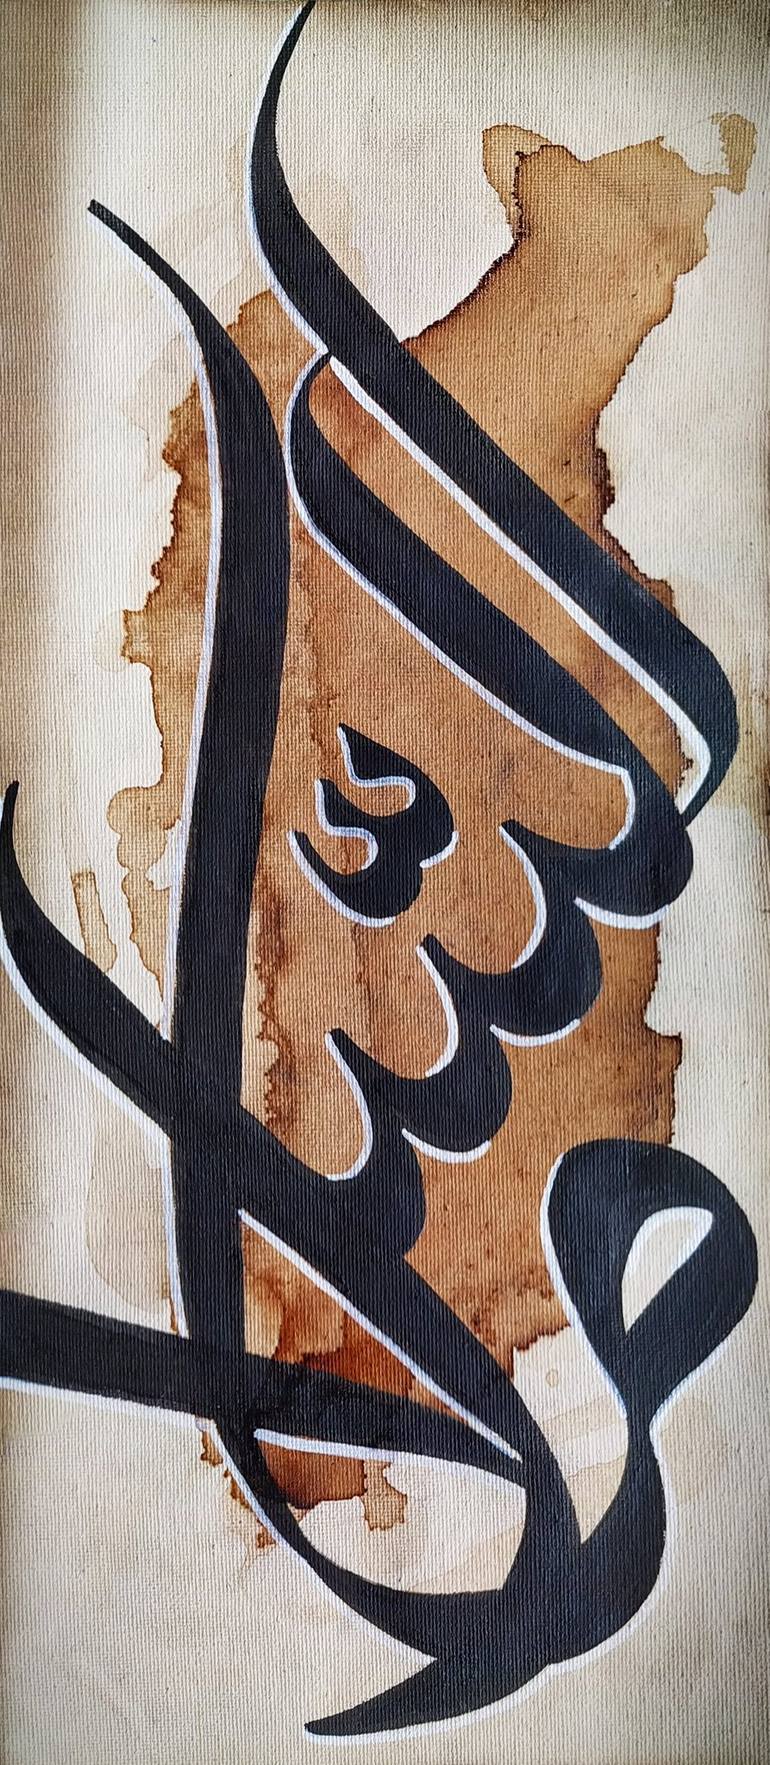 As-Salam - Names of Allah Calligraphy Painting by Muhammad Daniyal ...